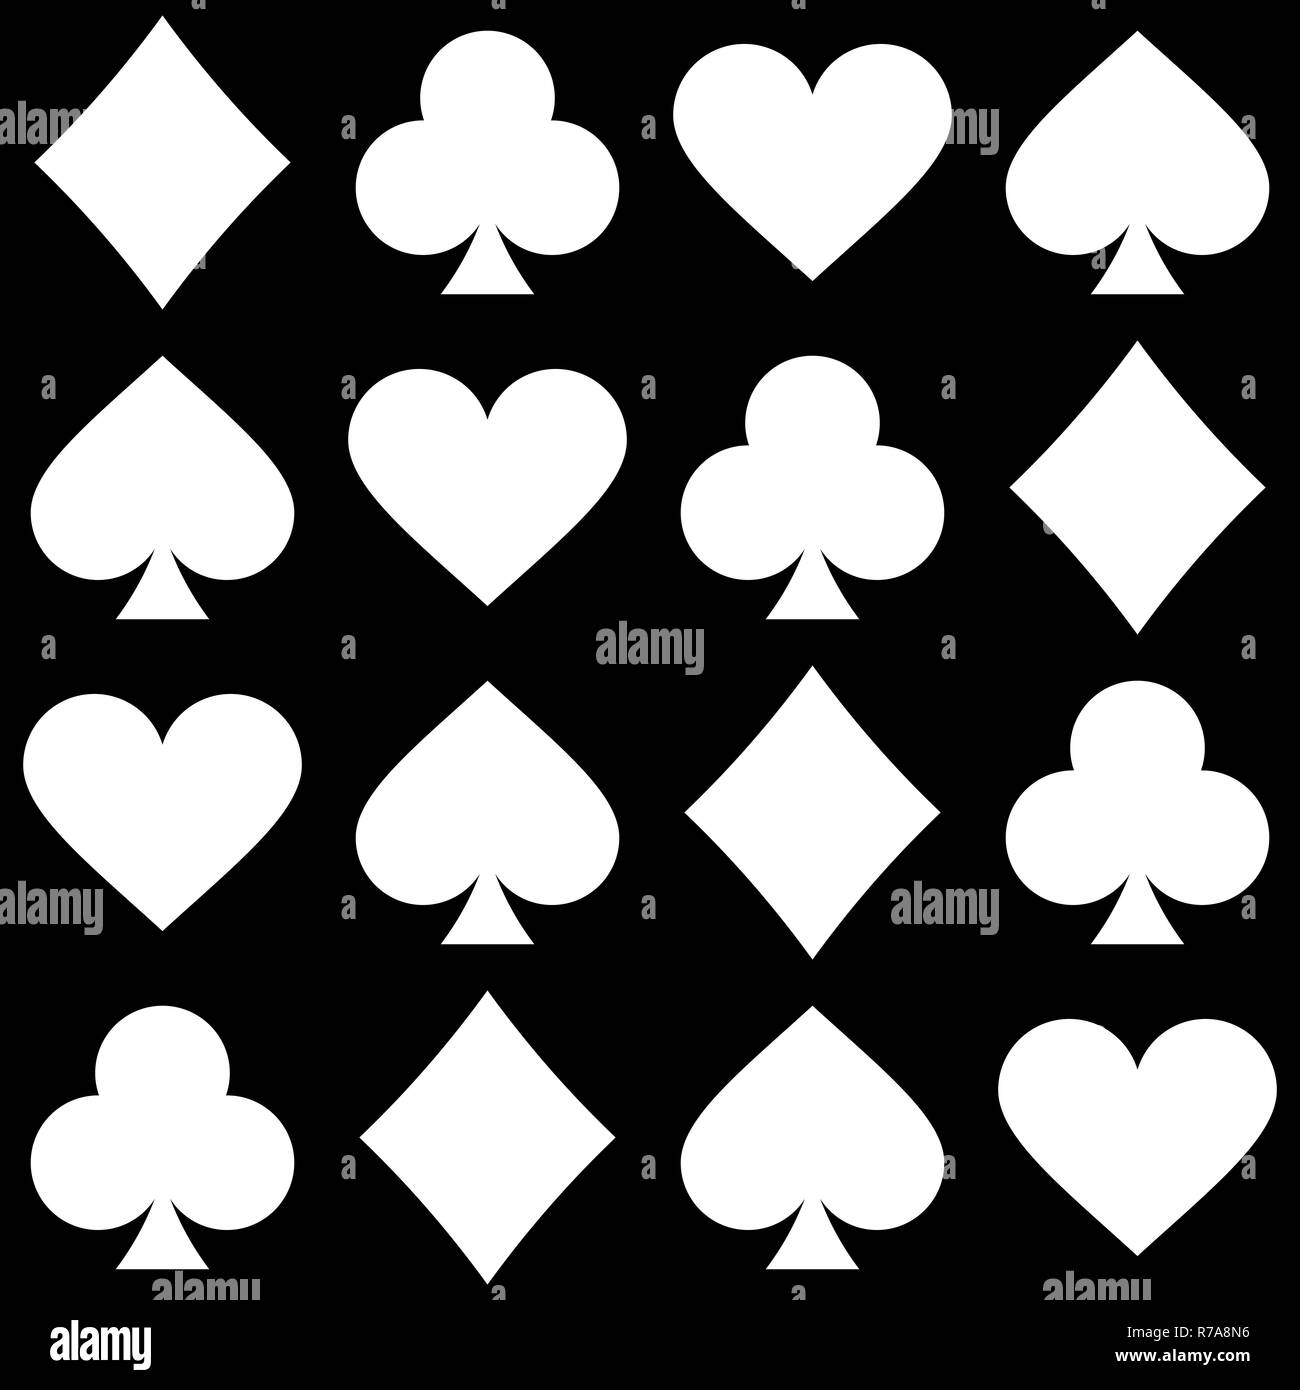 Playing card seamless pattern Stock Photo